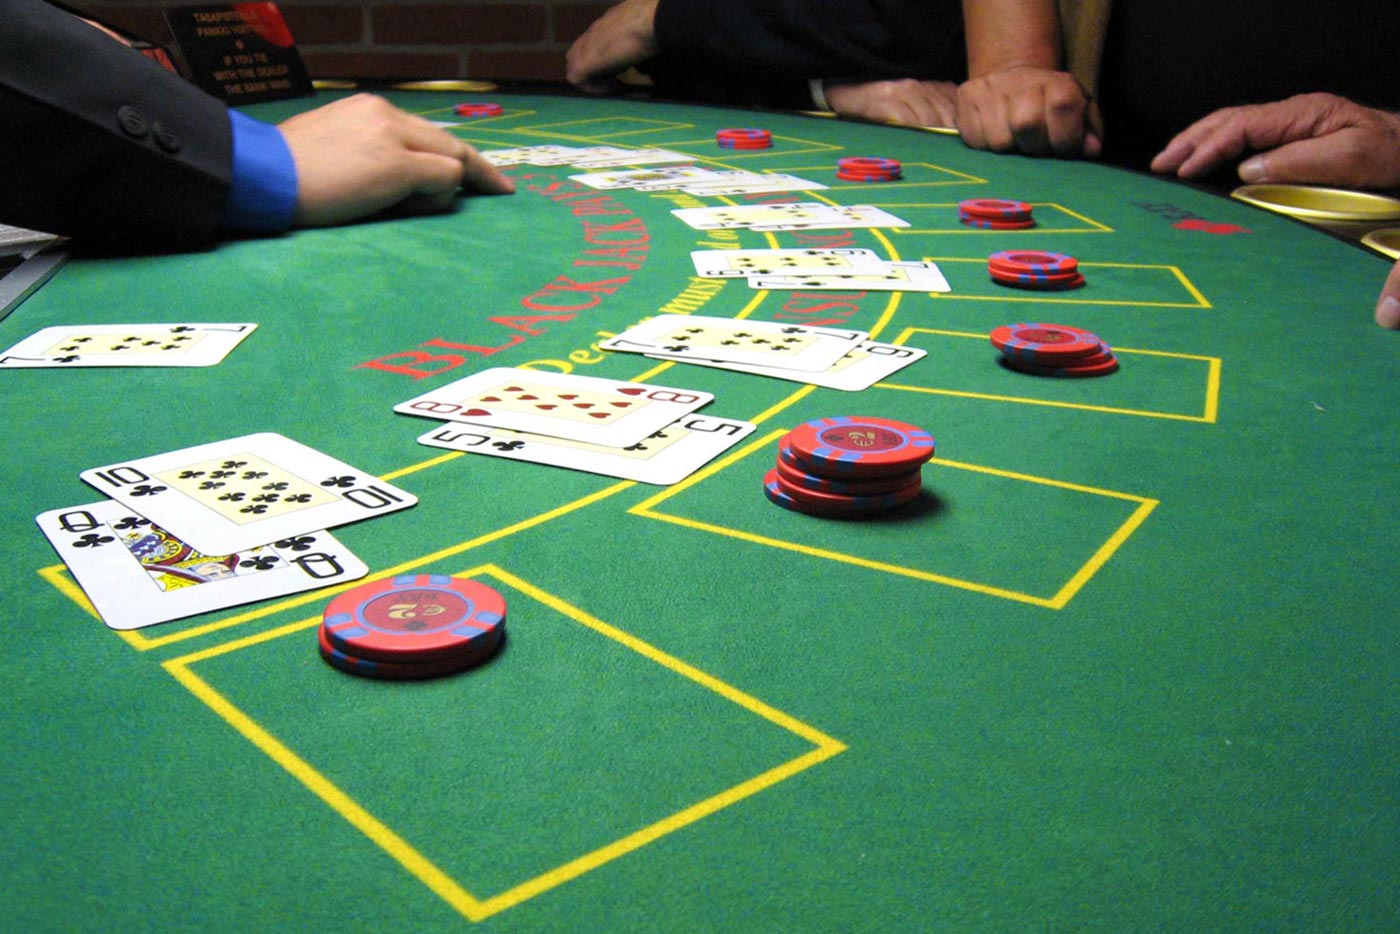 Torneos de blackjack online – Reglas, inscripciones y ganancias